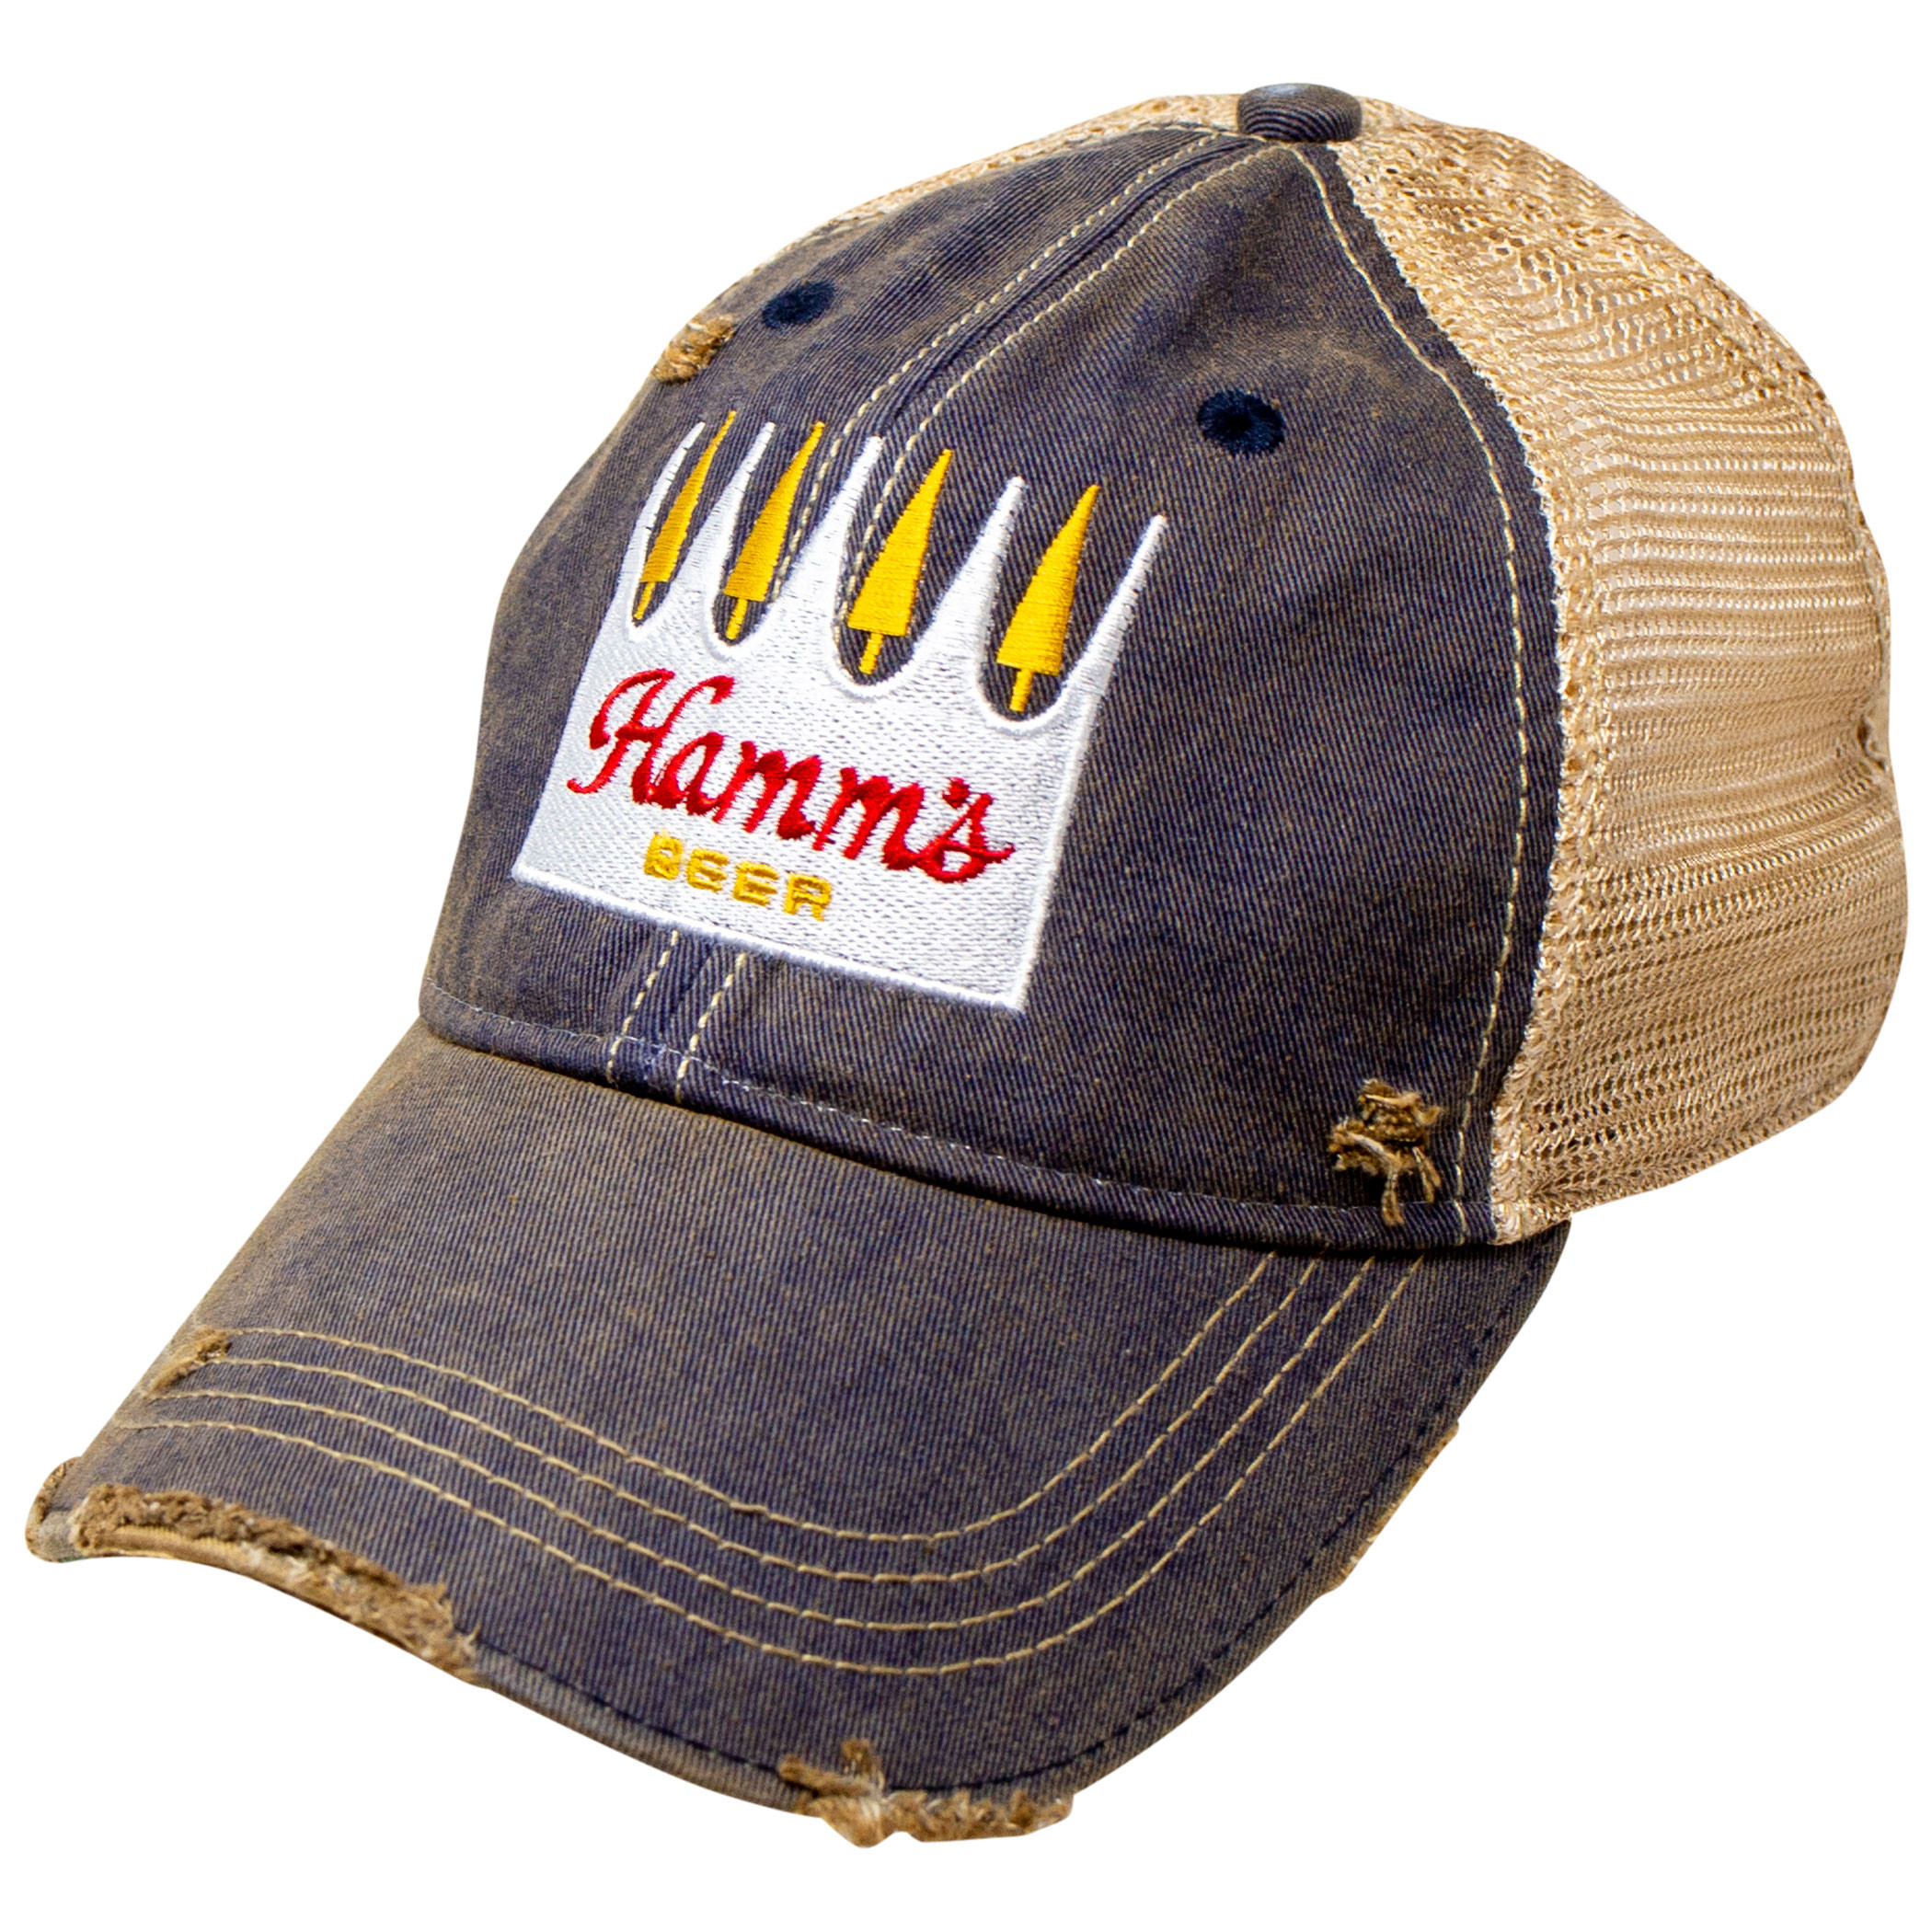 Hamm's Beer Weathered Adjustable Mesh Trucker Hat